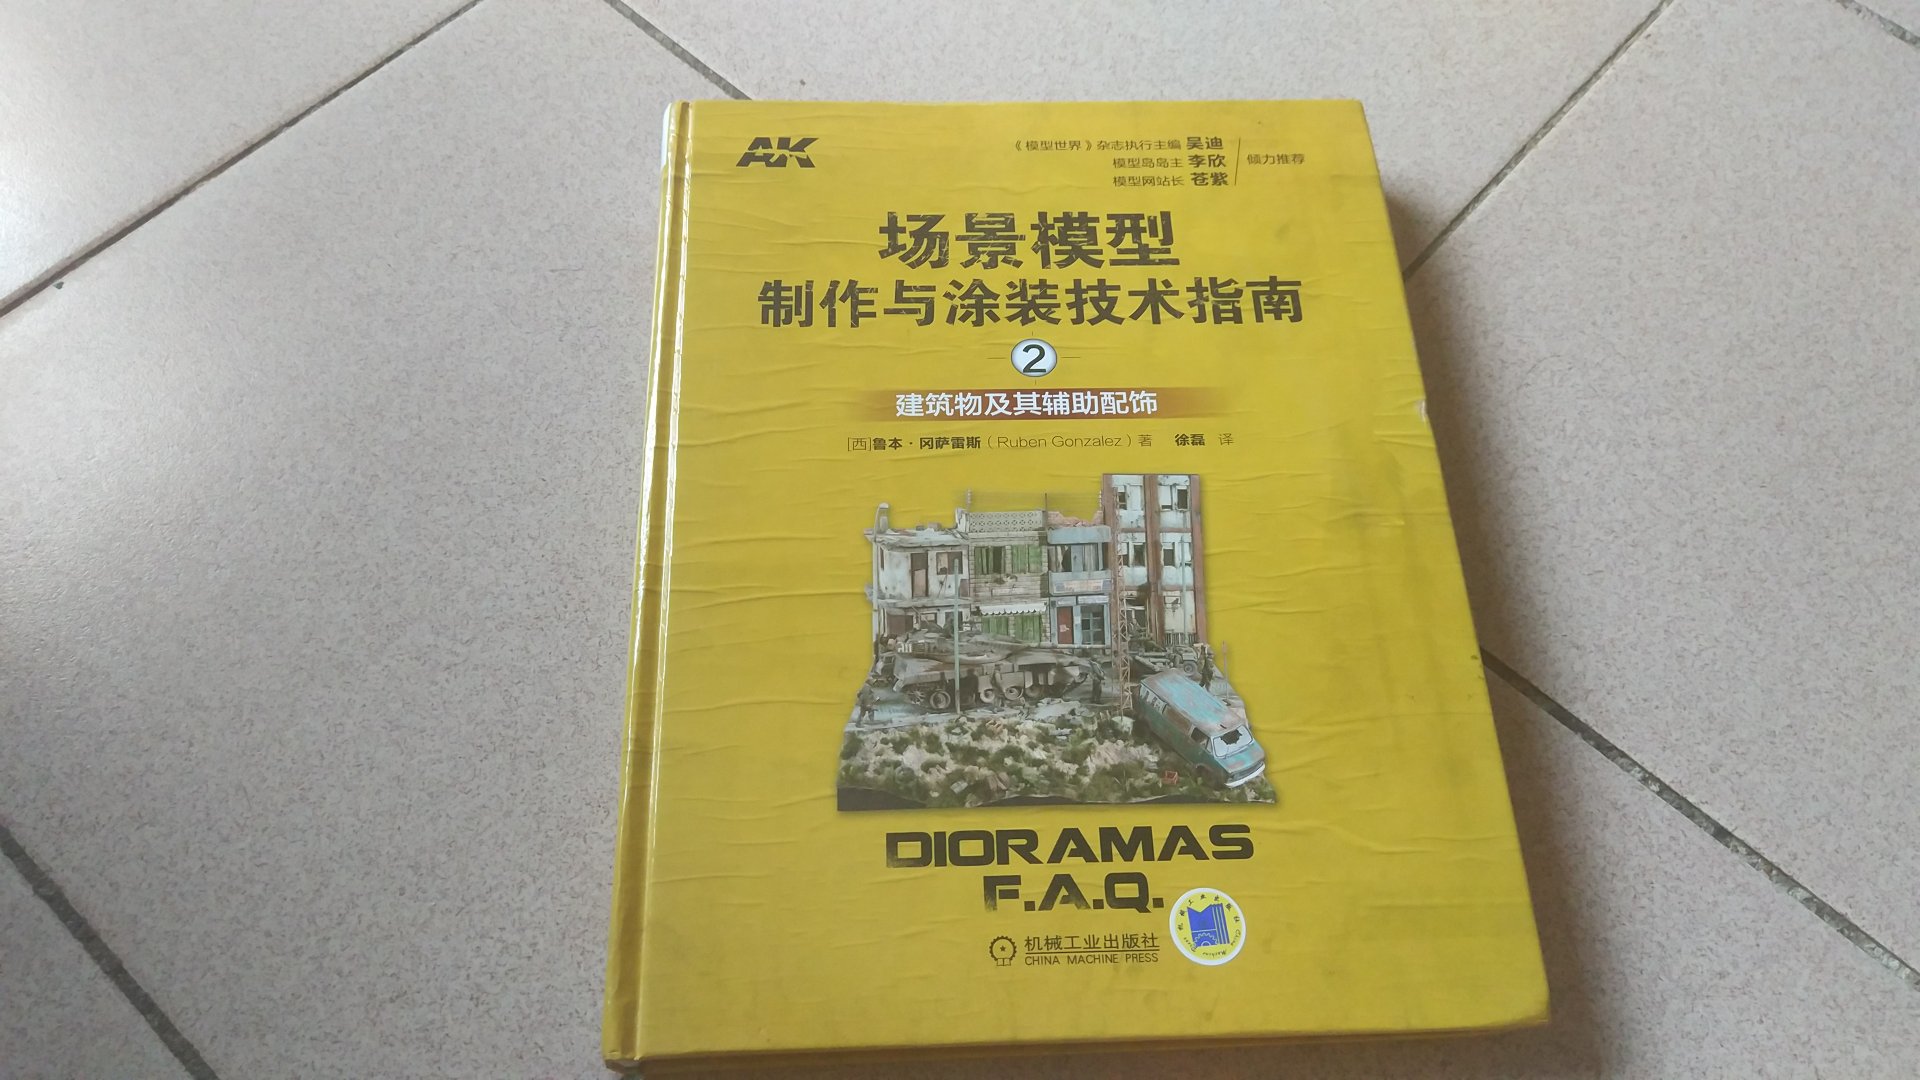 AK出品的模型制作书籍（战车涂装类的不算）品质一直都非常高，步奏非常详细，成品质量也非常高，如果能附带中文翻译的制作视频就更好了